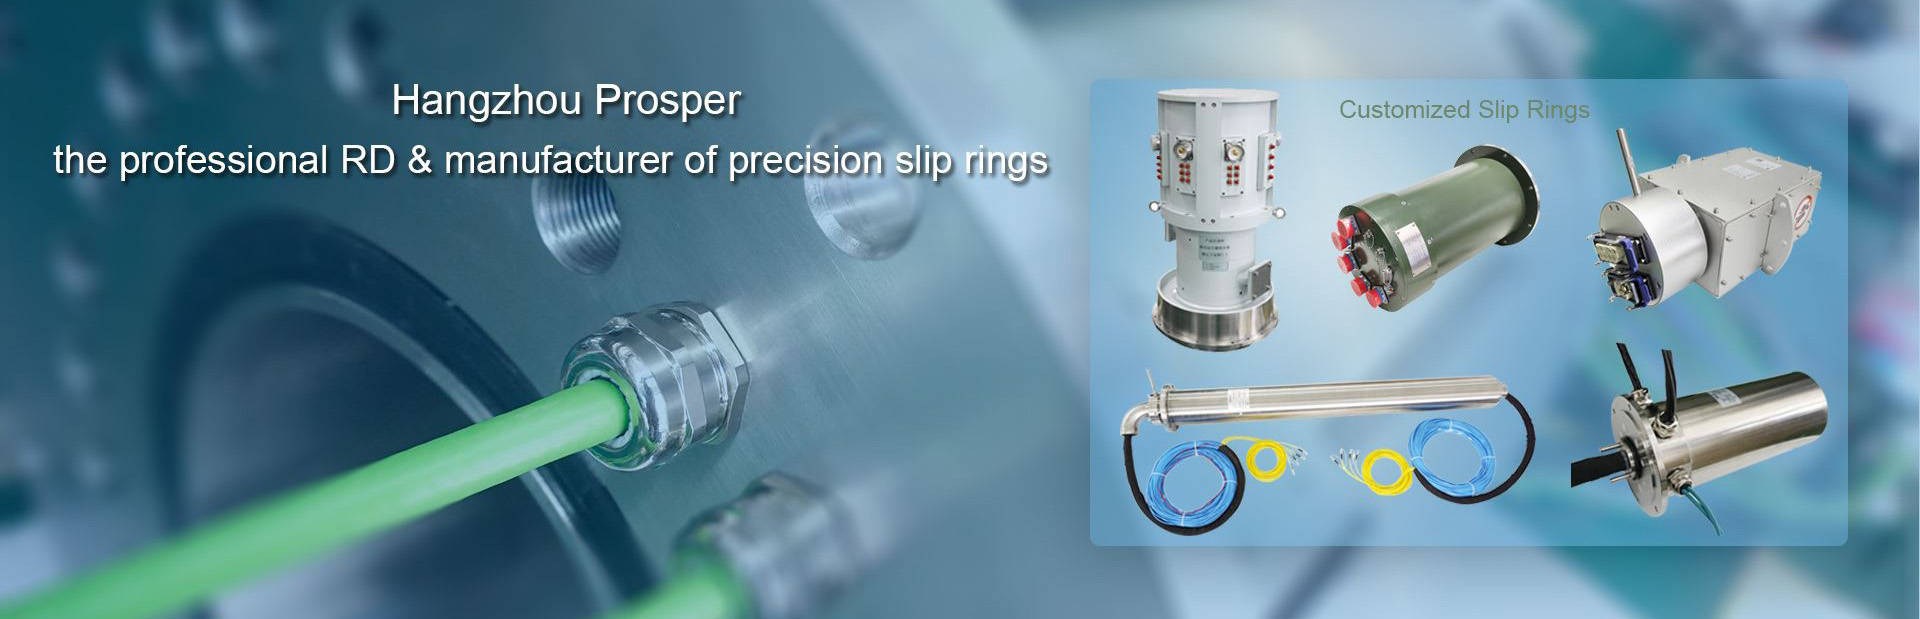 Fiber optic slip ring - LPC-1C1202 - JINPAT Electronics Co., Ltd. - capsule